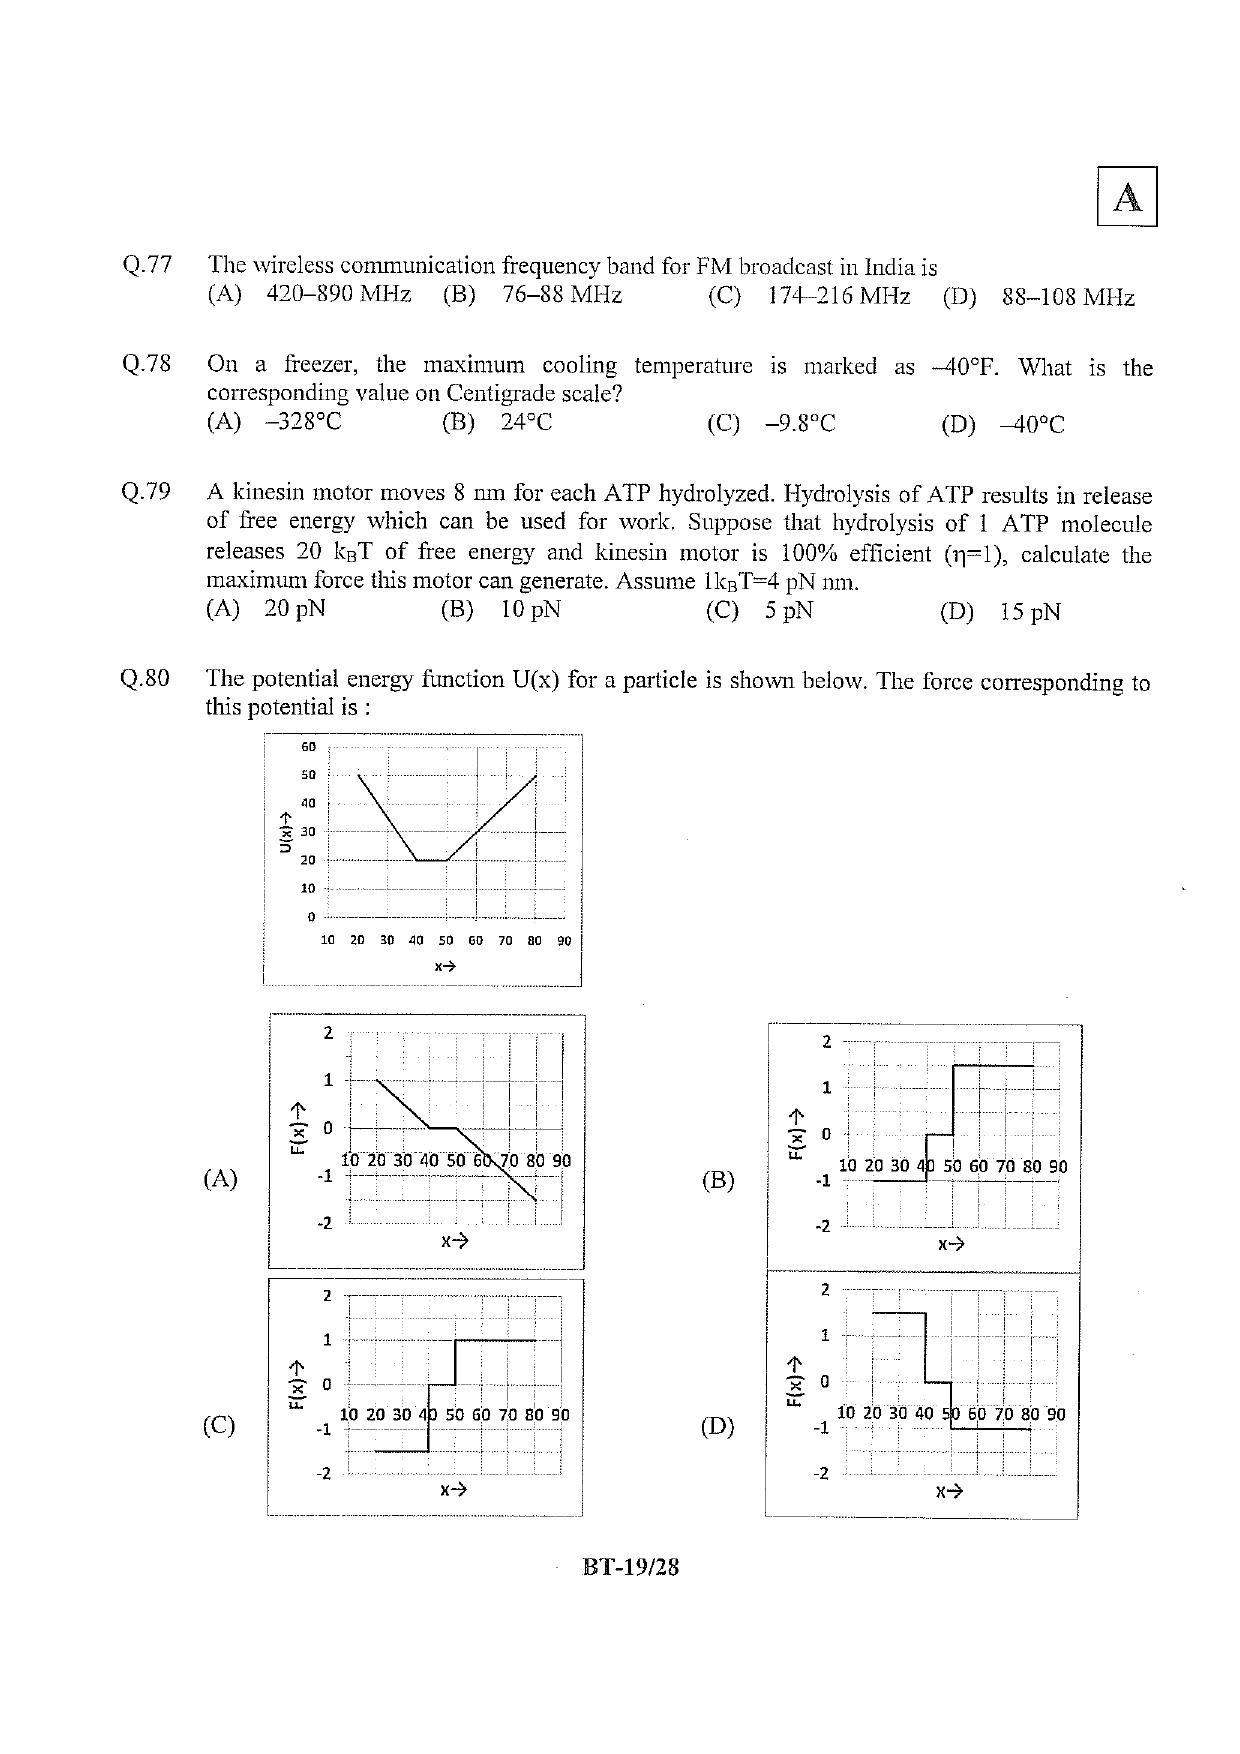 JAM 2013: BT Question Paper - Page 20